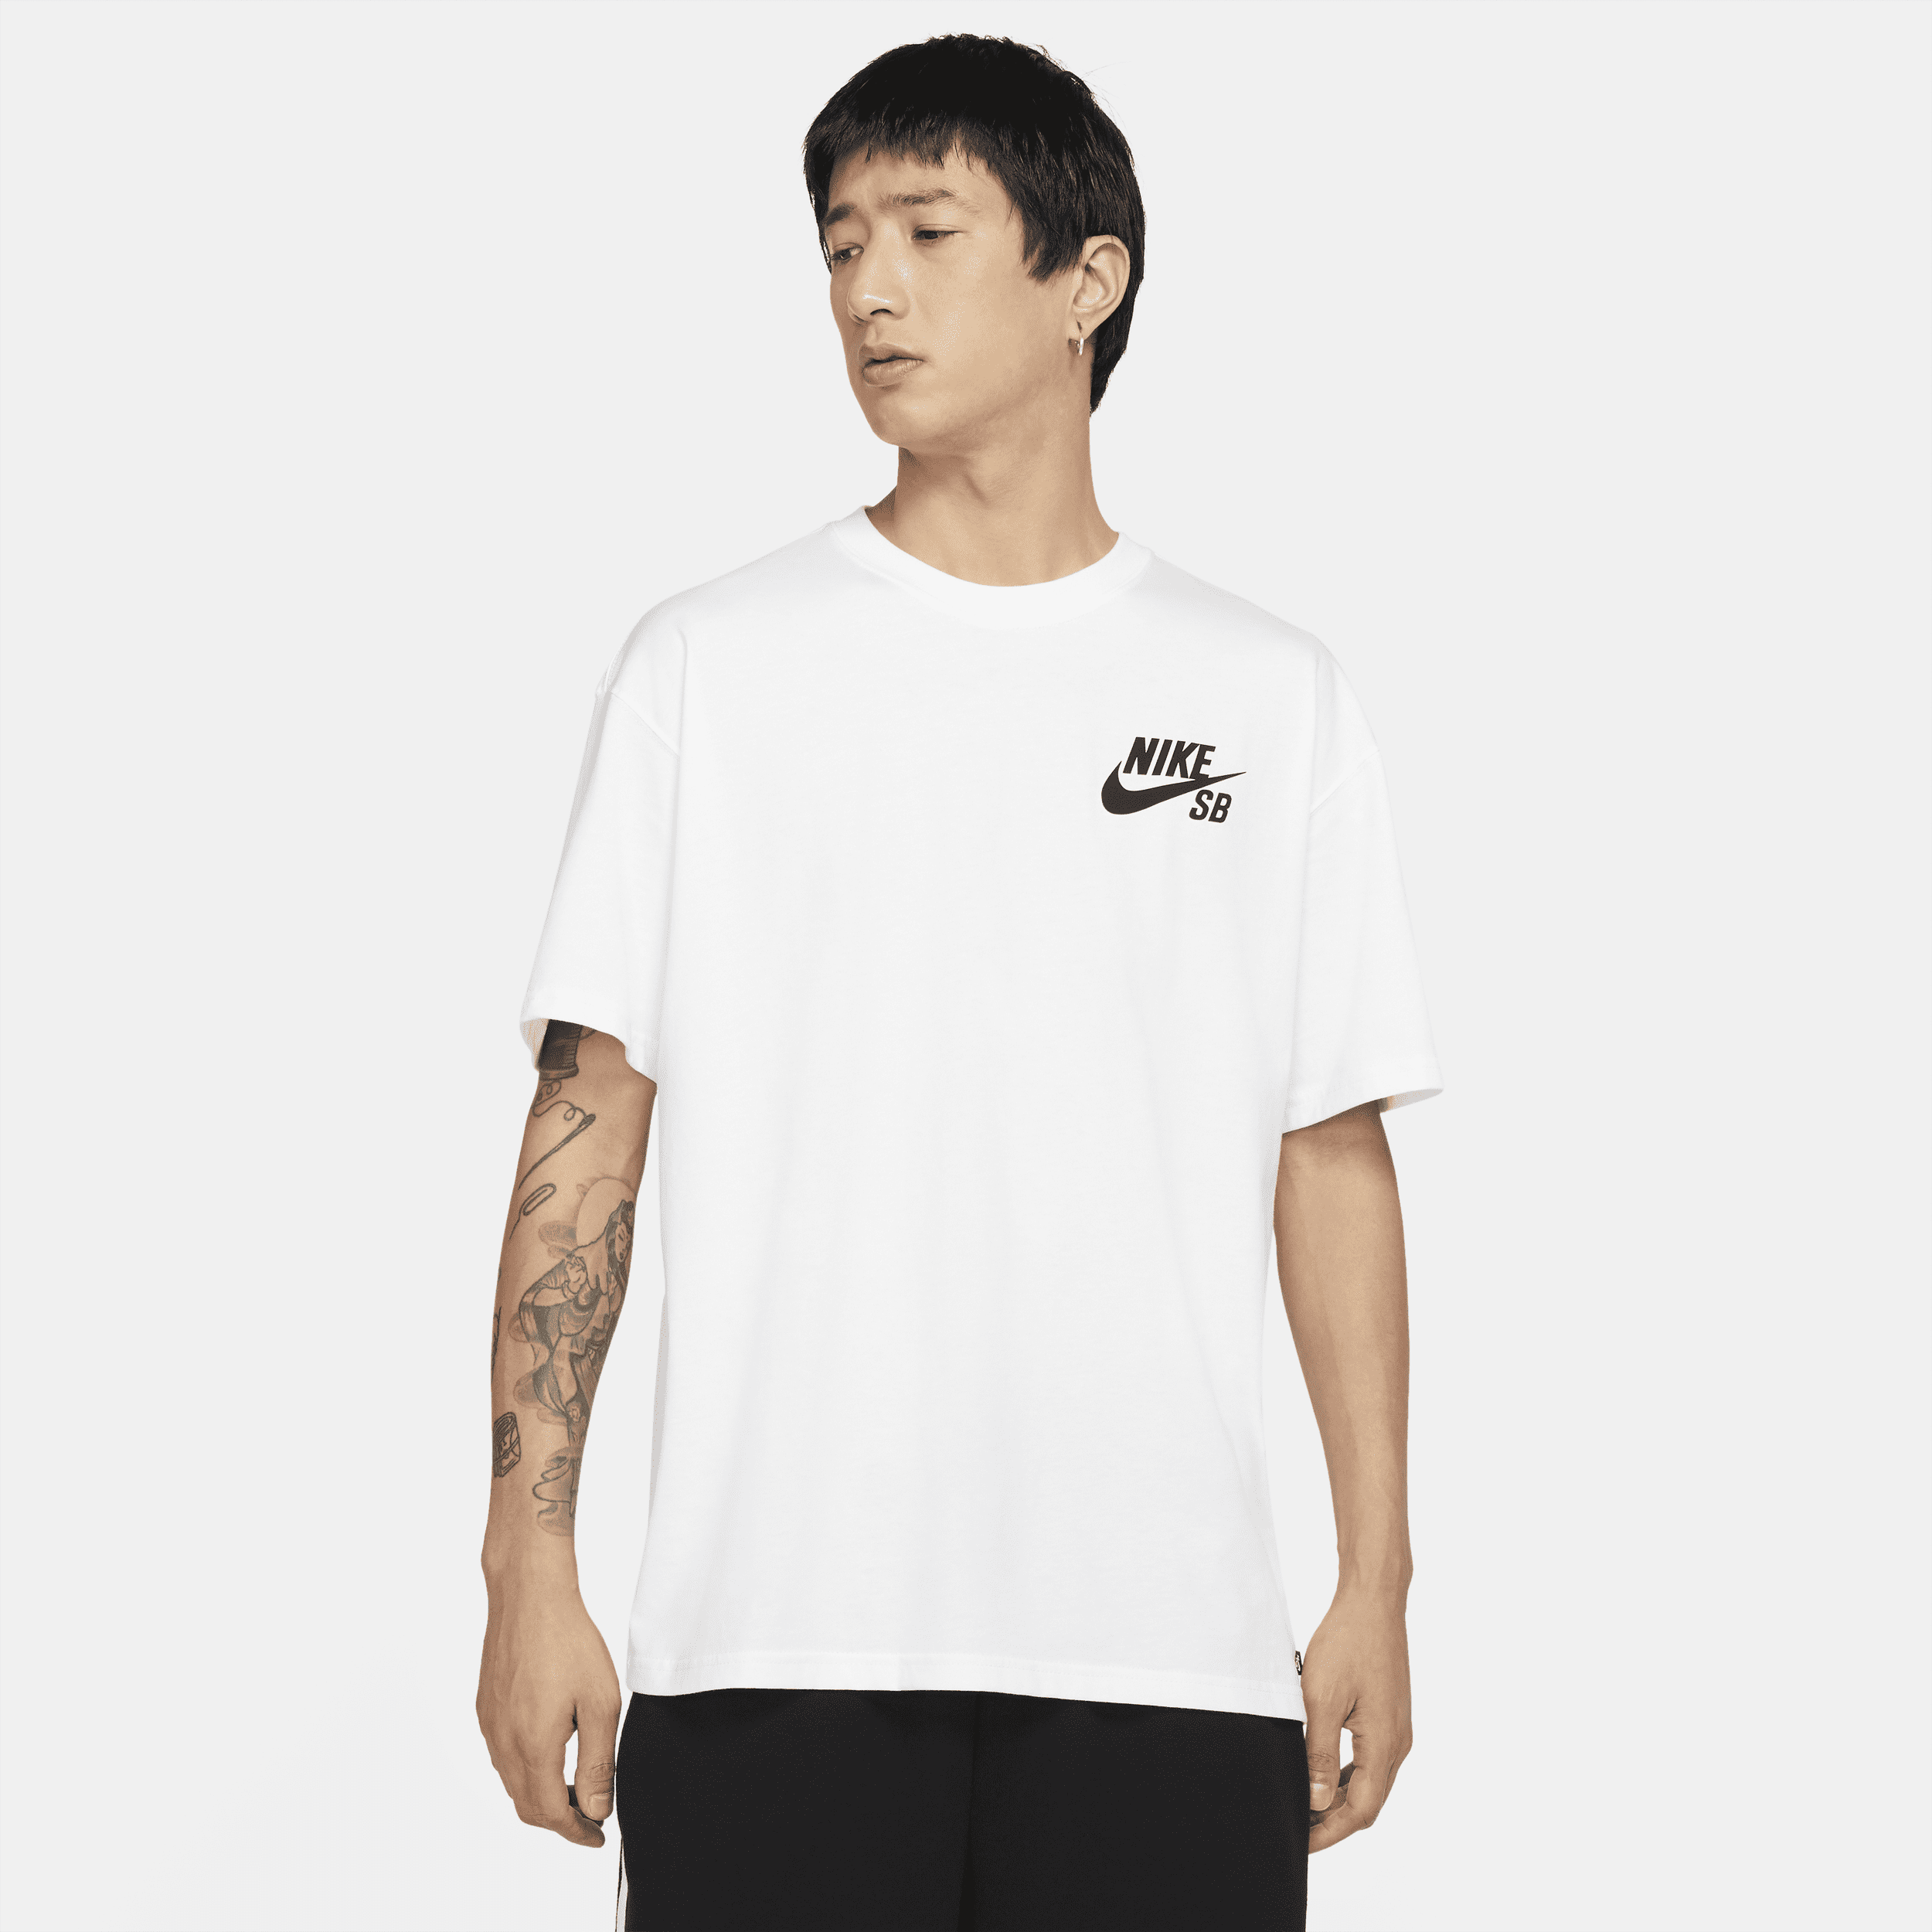 Nike SB-skater-T-shirt med logo - hvid